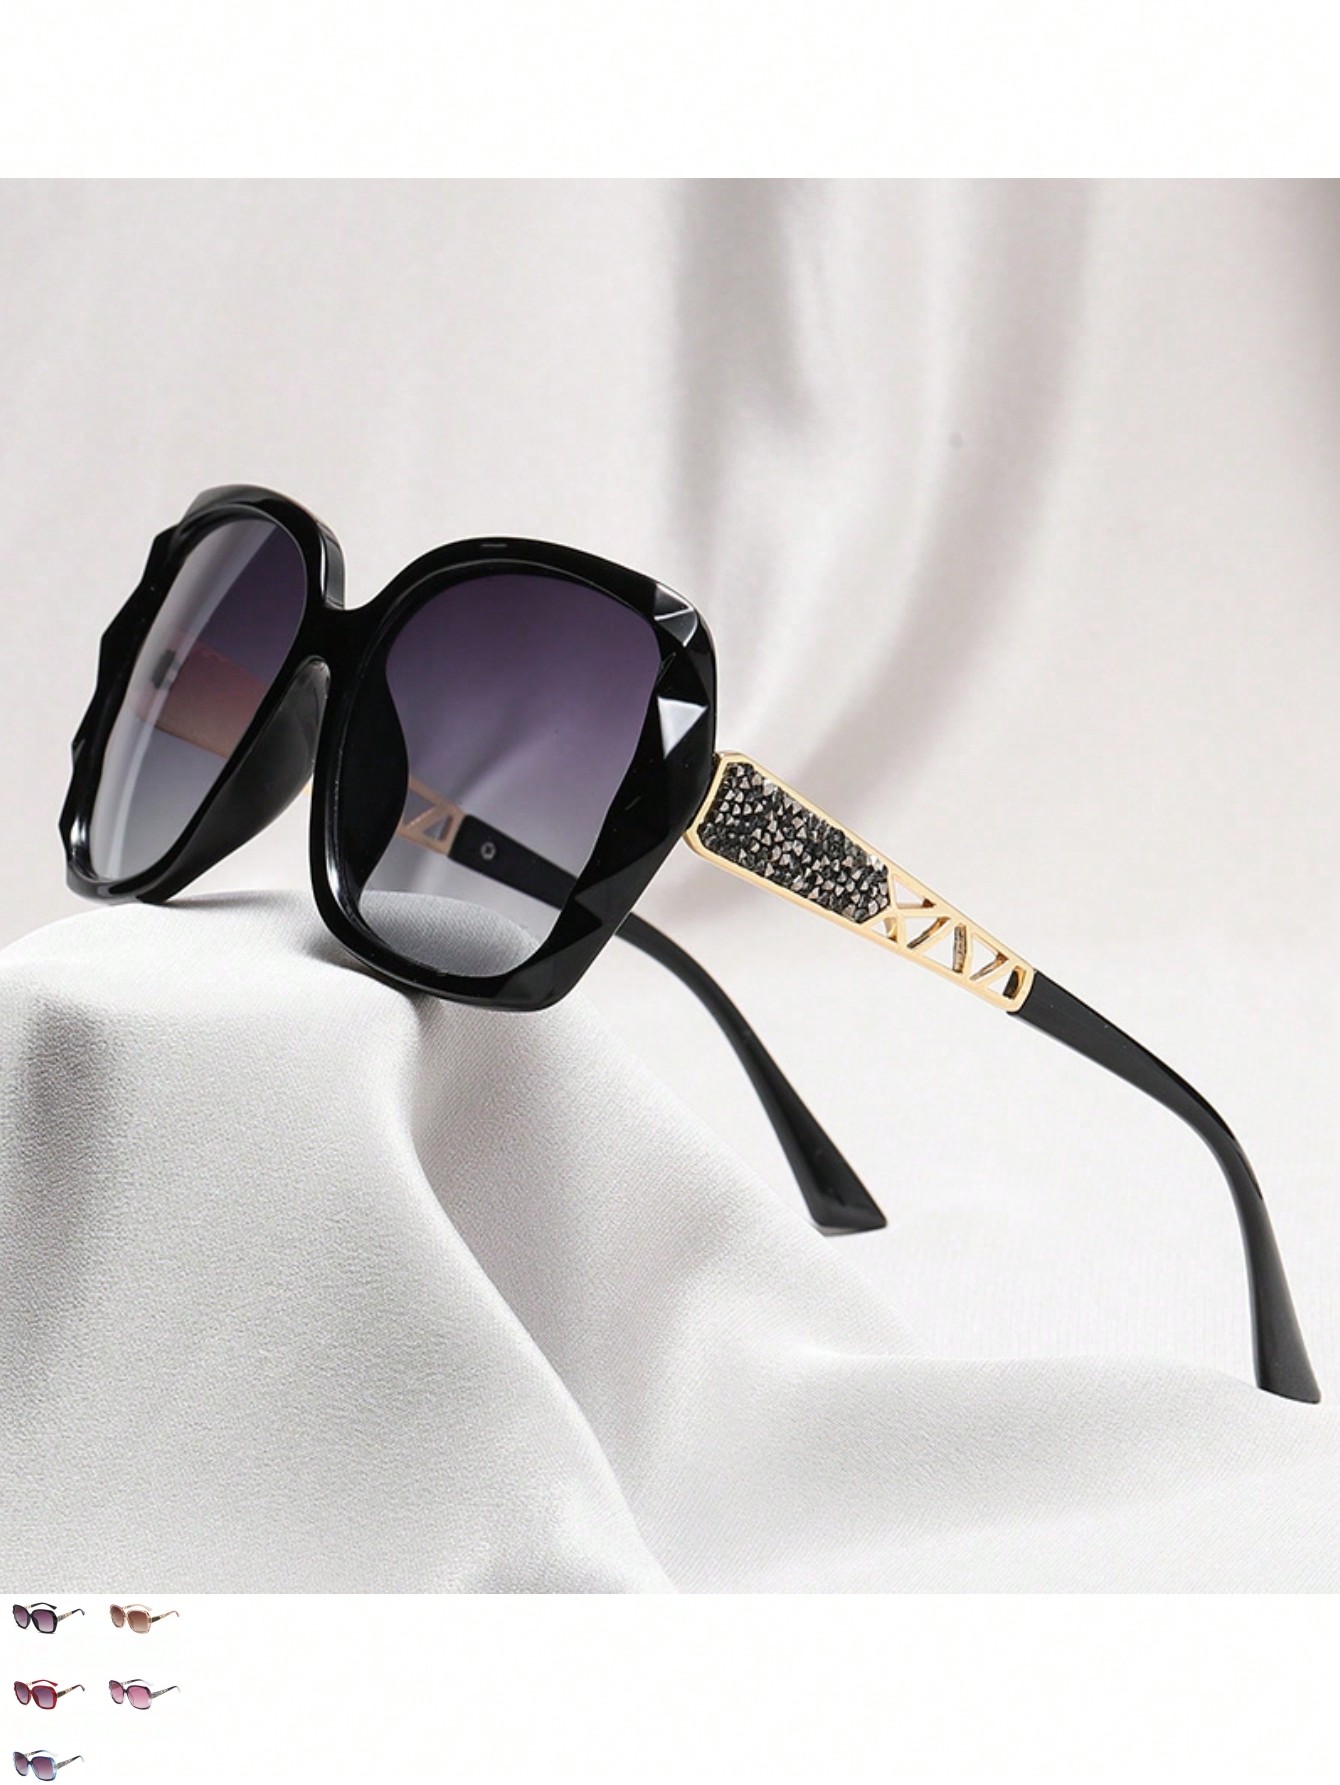 1шт женские солнцезащитные очки большого размера с защитой от ультрафиолета и стразами